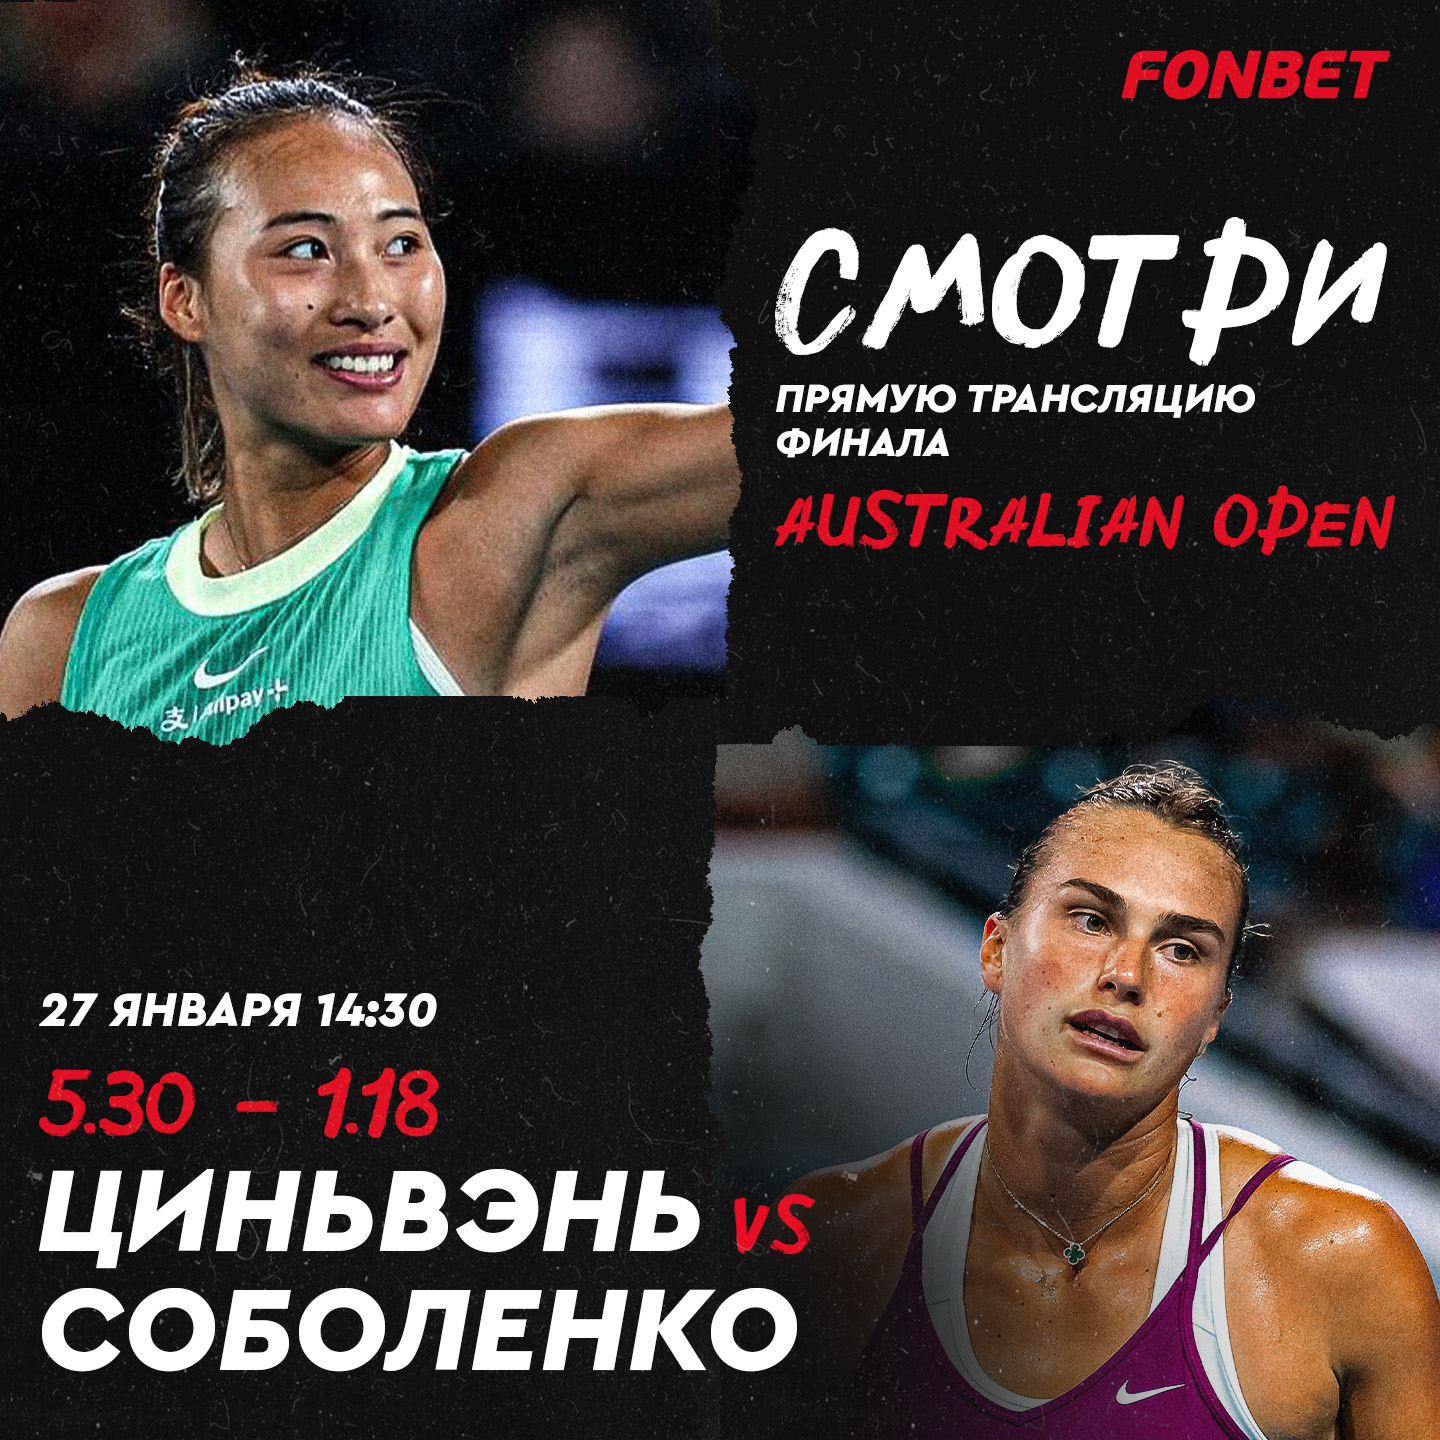 Прямая трансляция Соболенко – Чжэн: где смотреть онлайн финал Australian Open в Казахстане